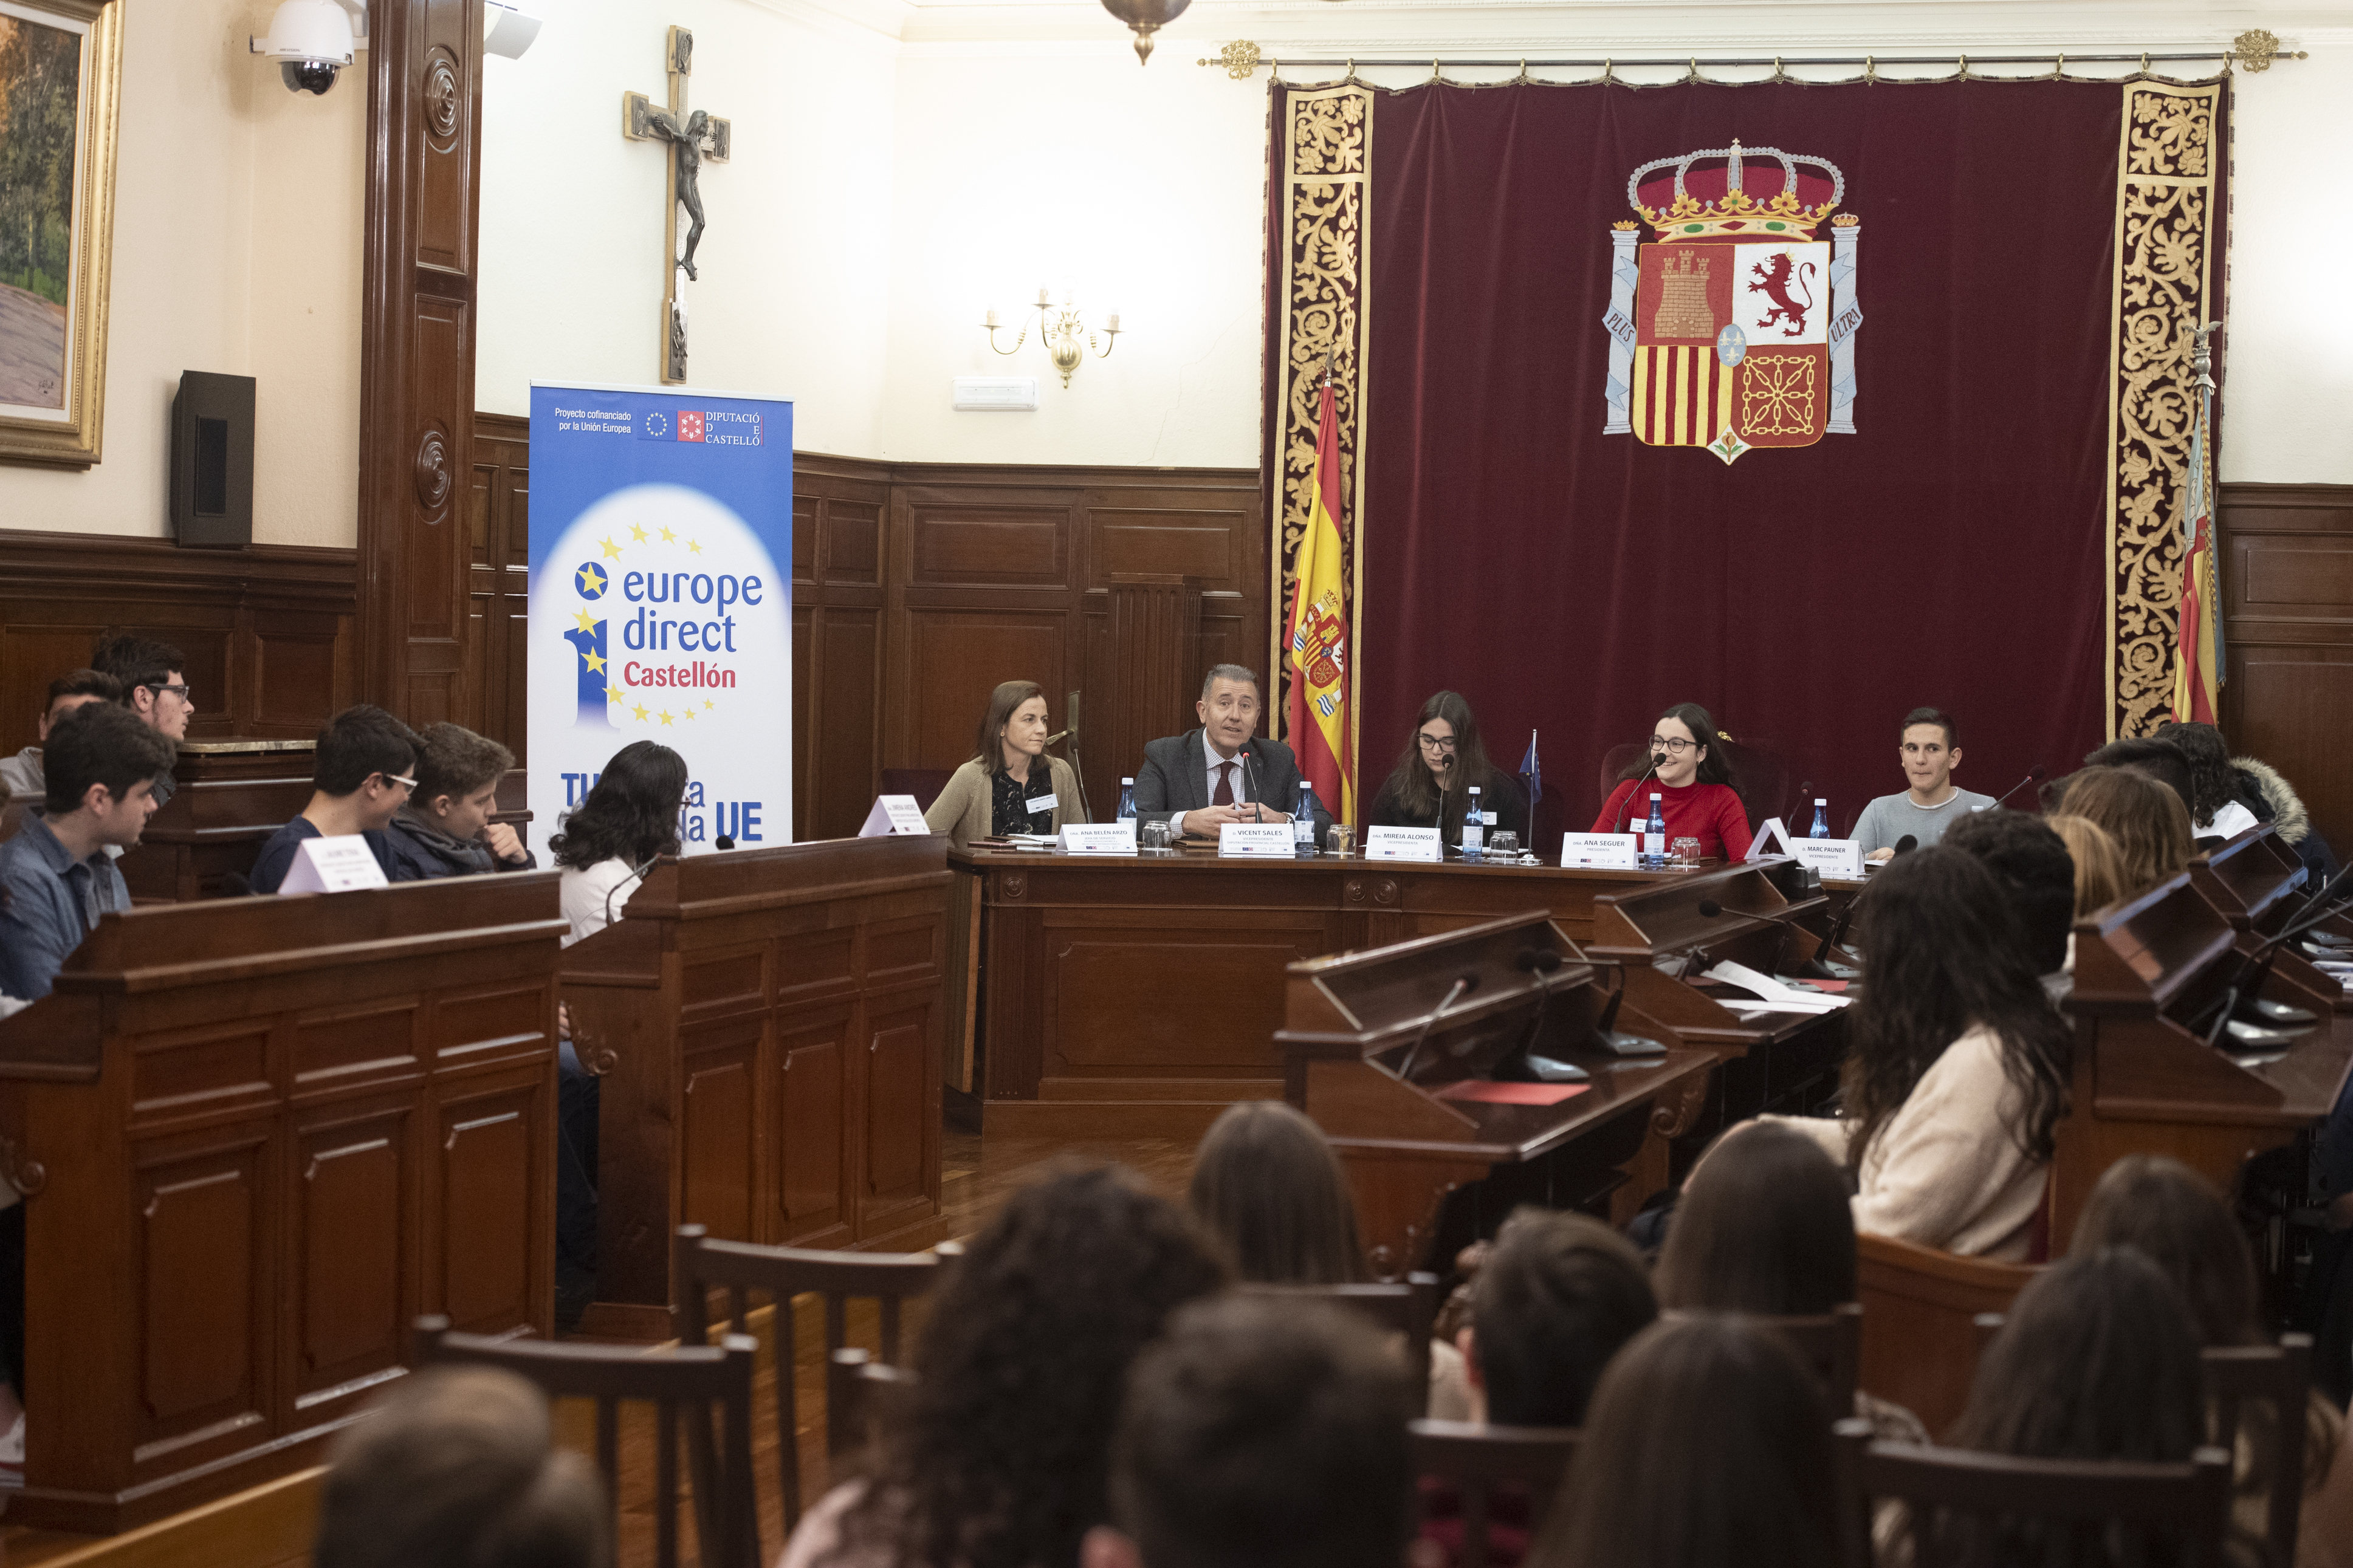 La Diputación organiza el debate “Elecciones europeas: #CSestavezvota”